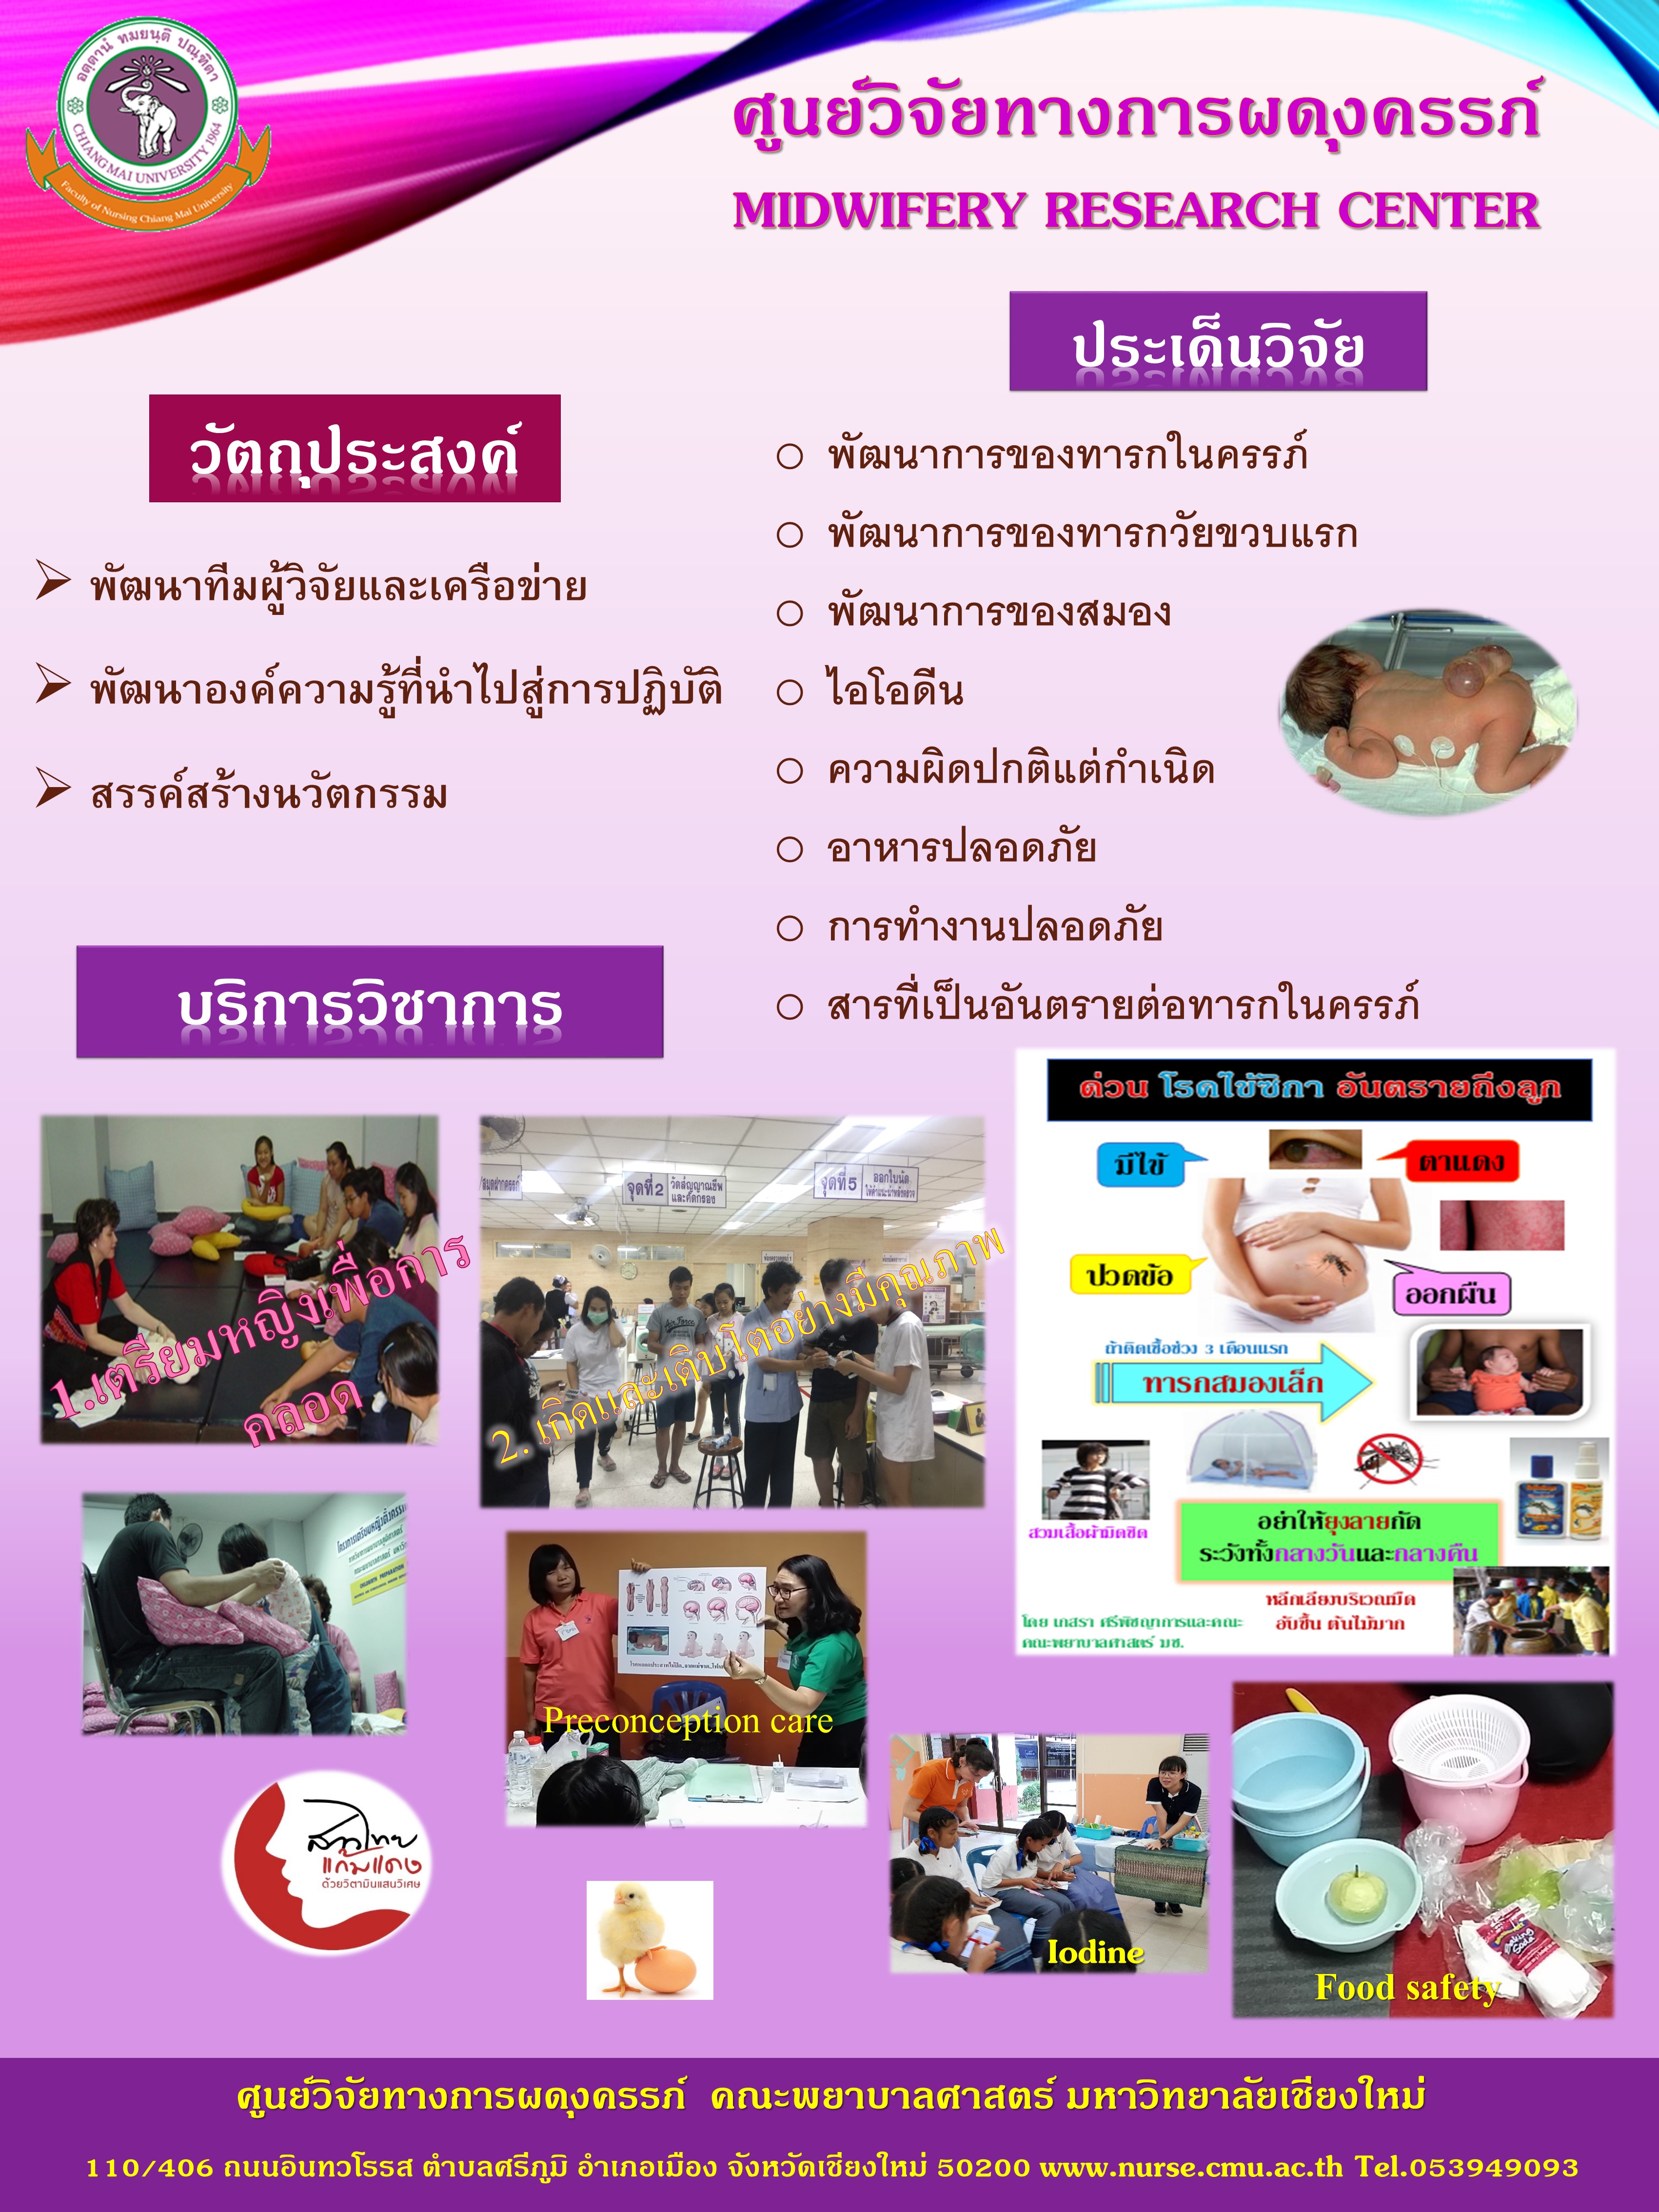 04-ศูนย์ผดุงครรภ์ โปสเตอร์18 มค. 62 ภาษาไทย.jpg